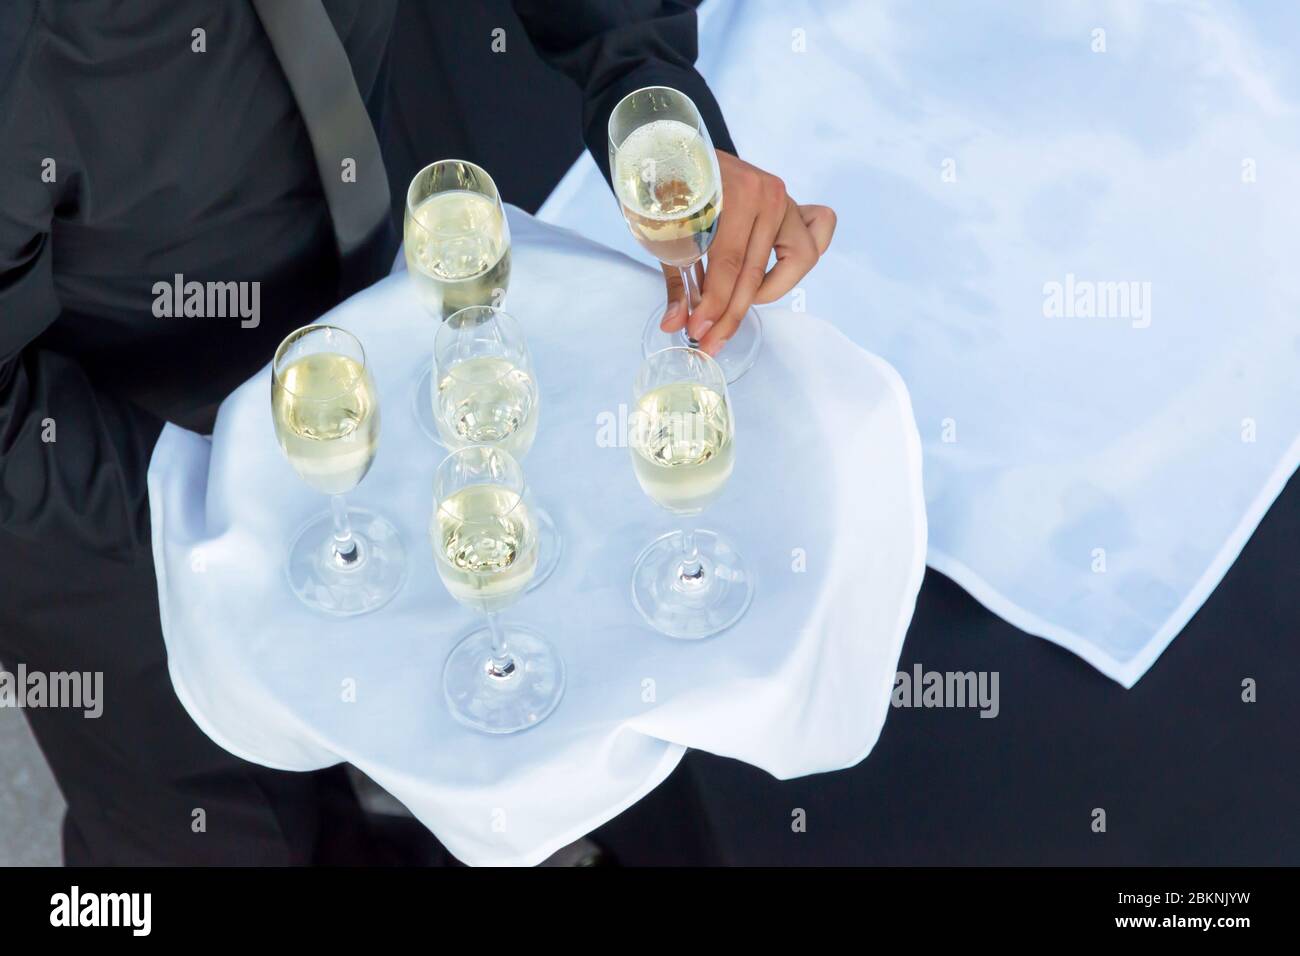 Von oben gesehen, dass ein Kellner ein Tablett mit Gläsern Champagner oder weißen Gewinnen hält, und Getränke auf einer Cocktailparty serviert Stockfoto